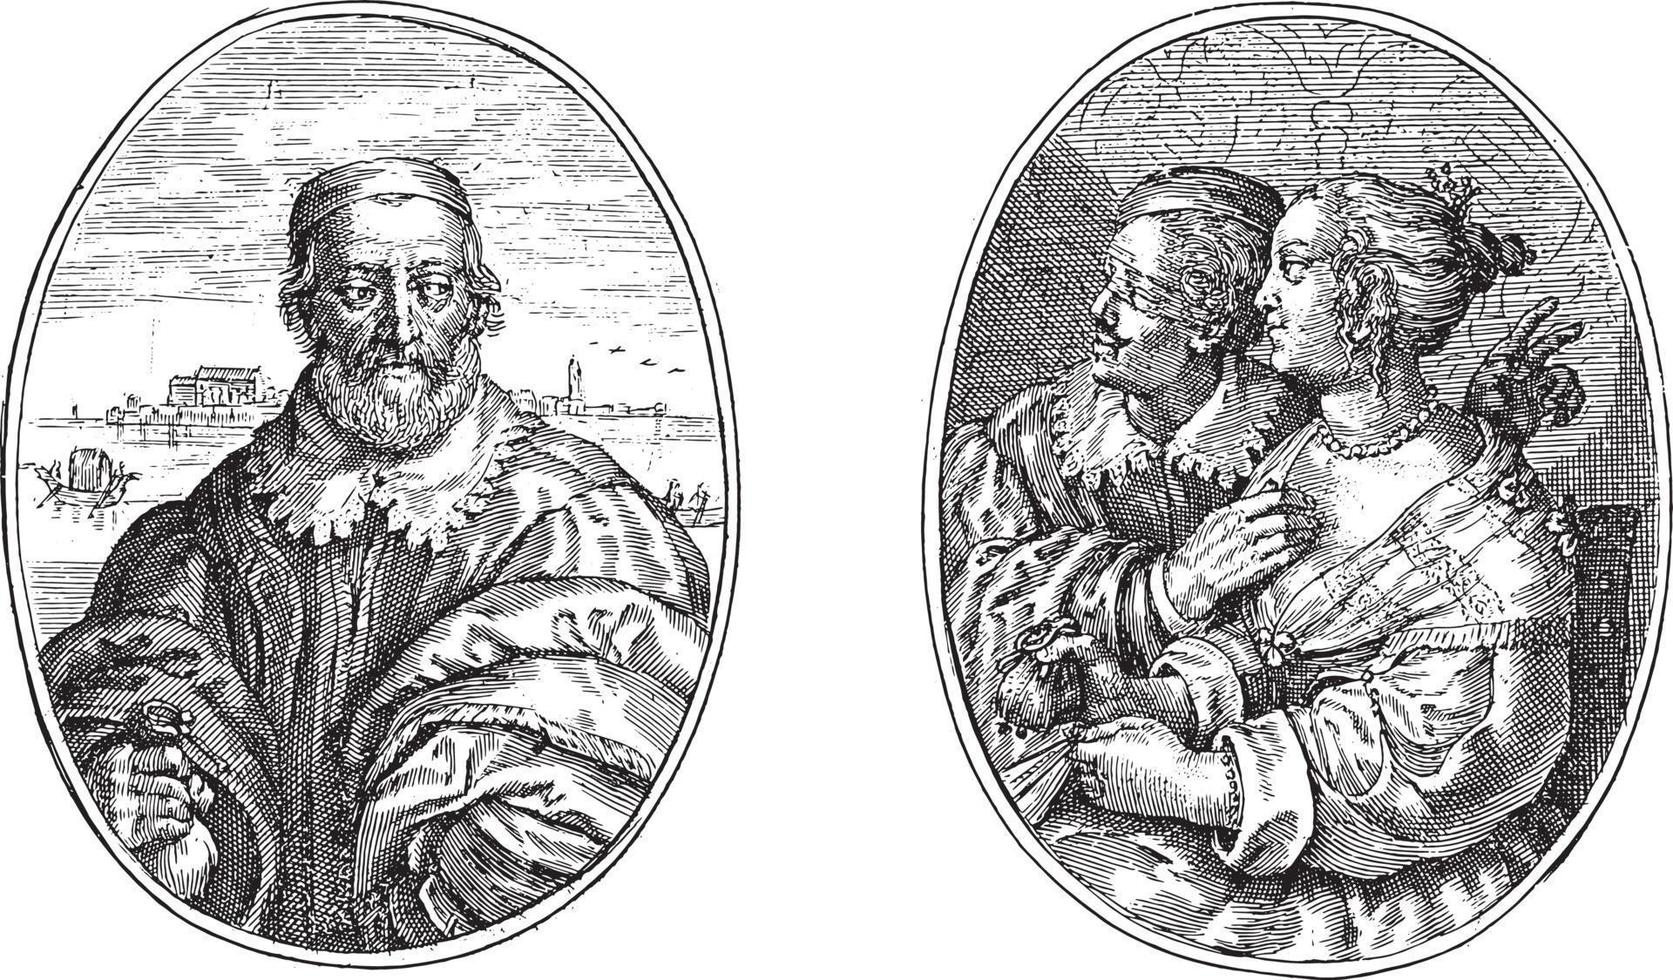 noble de venecia y su esposa leonella, crispijn van de passe ii, 1641, ilustración antigua. vector